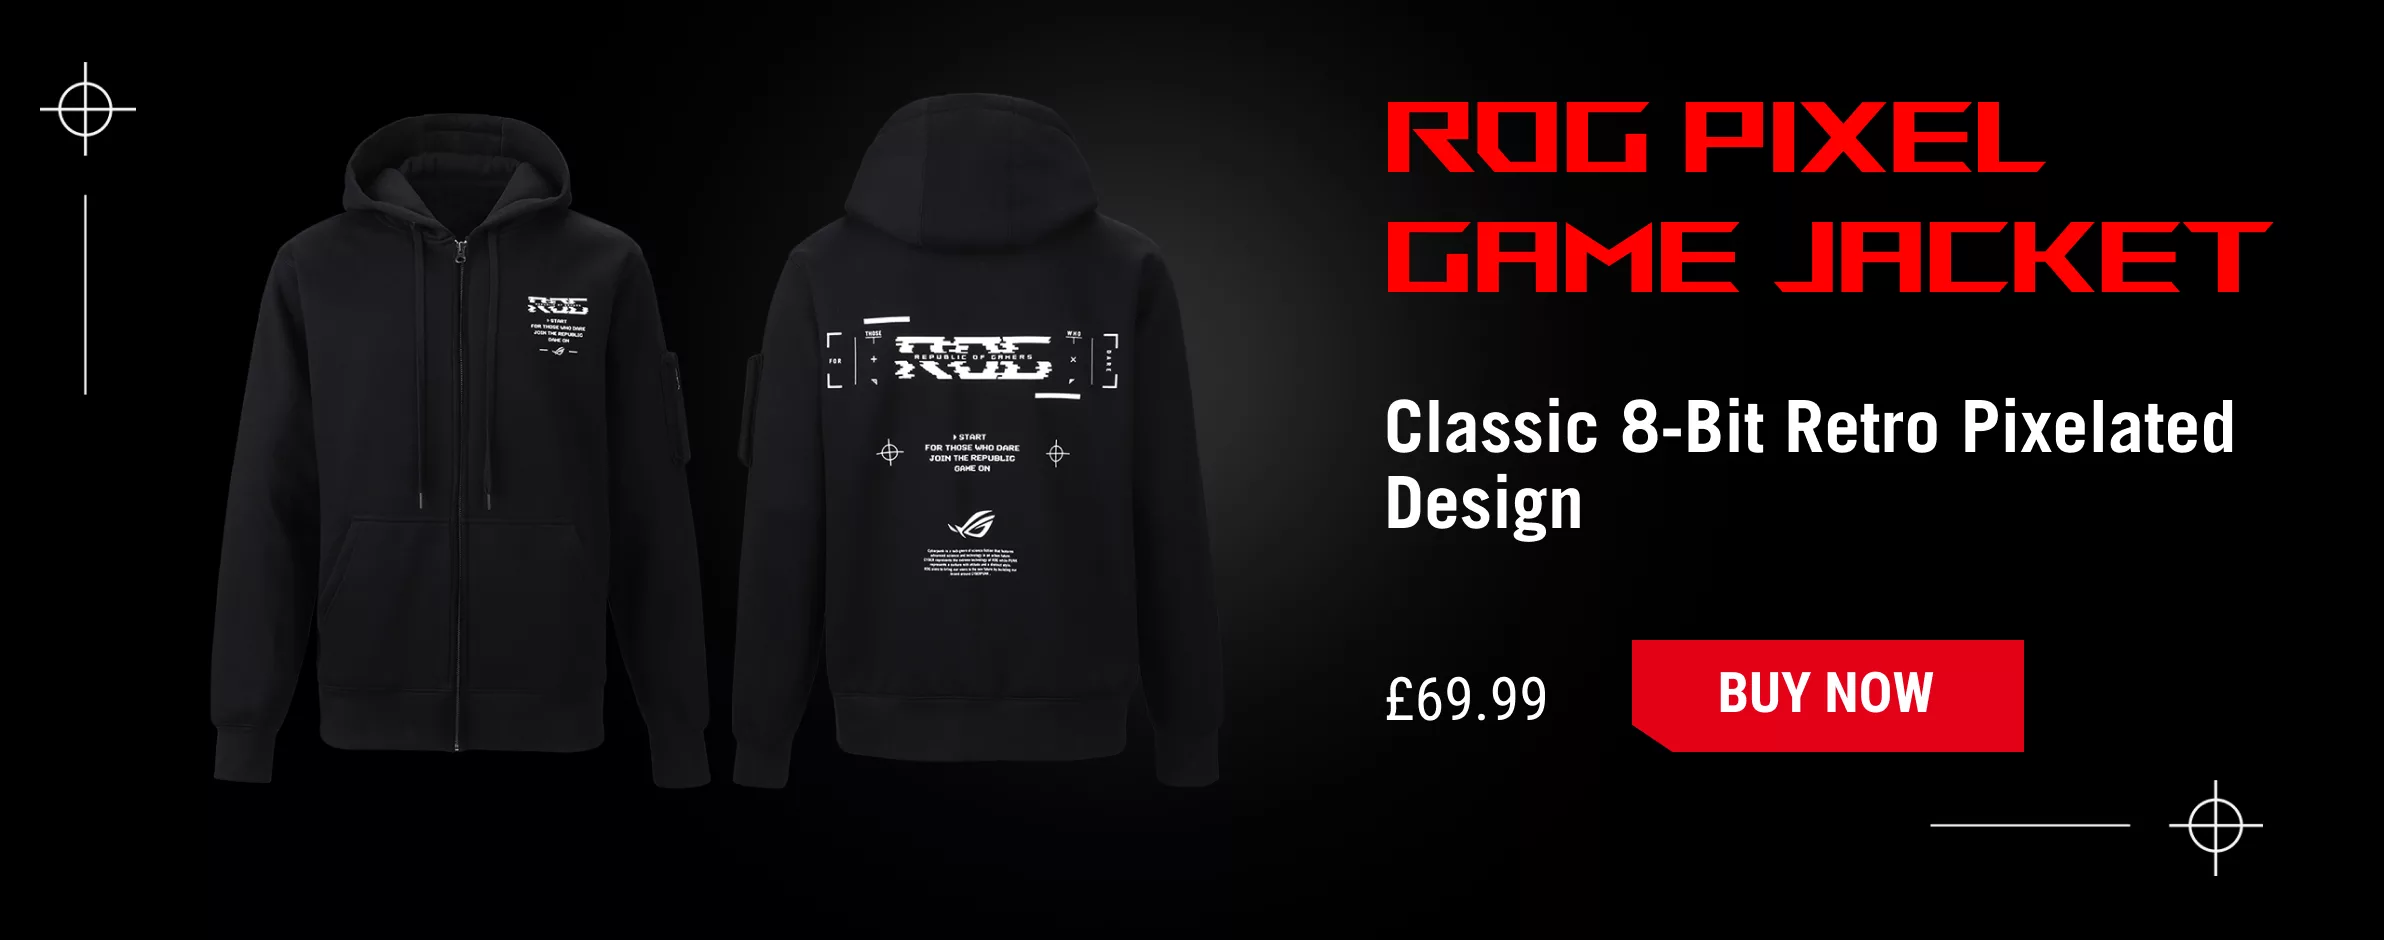 ROG Pixel Game Jacket